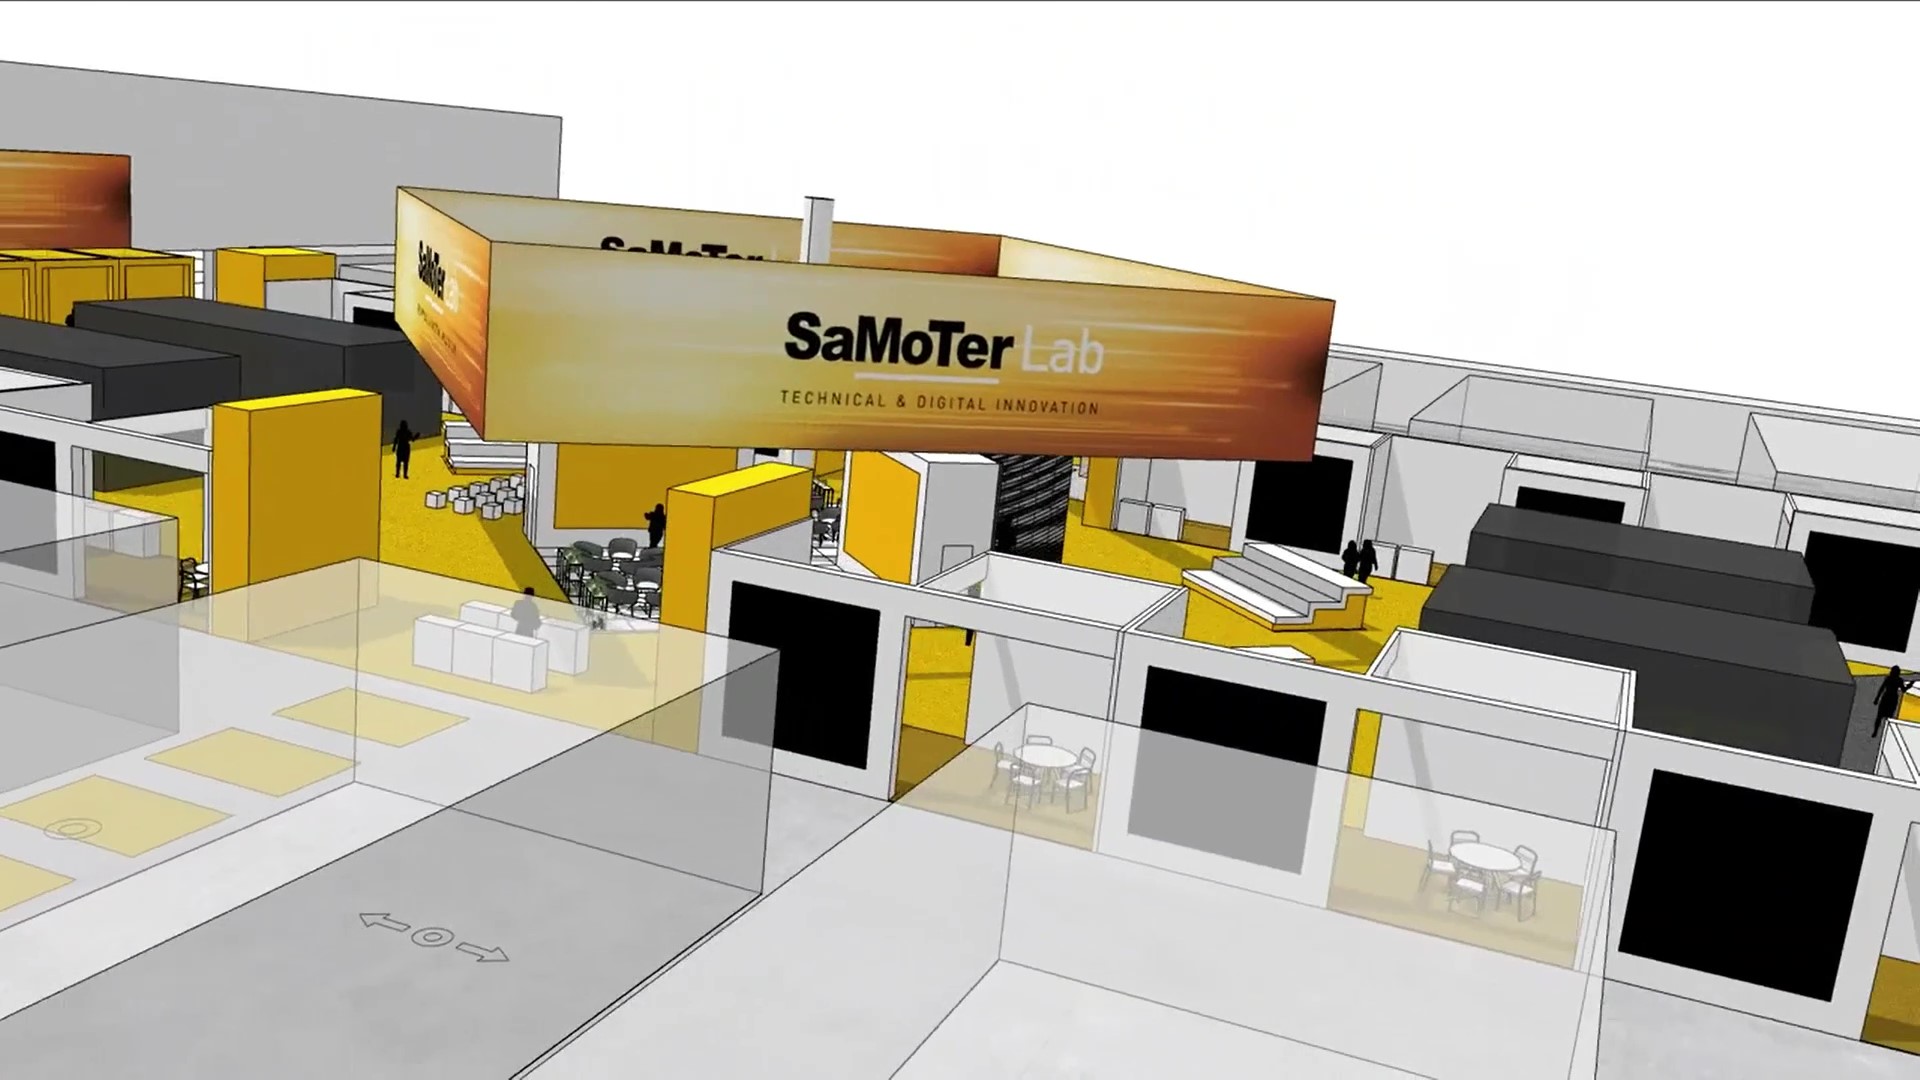 Samoter Lab troverà posto nel padiglione 12